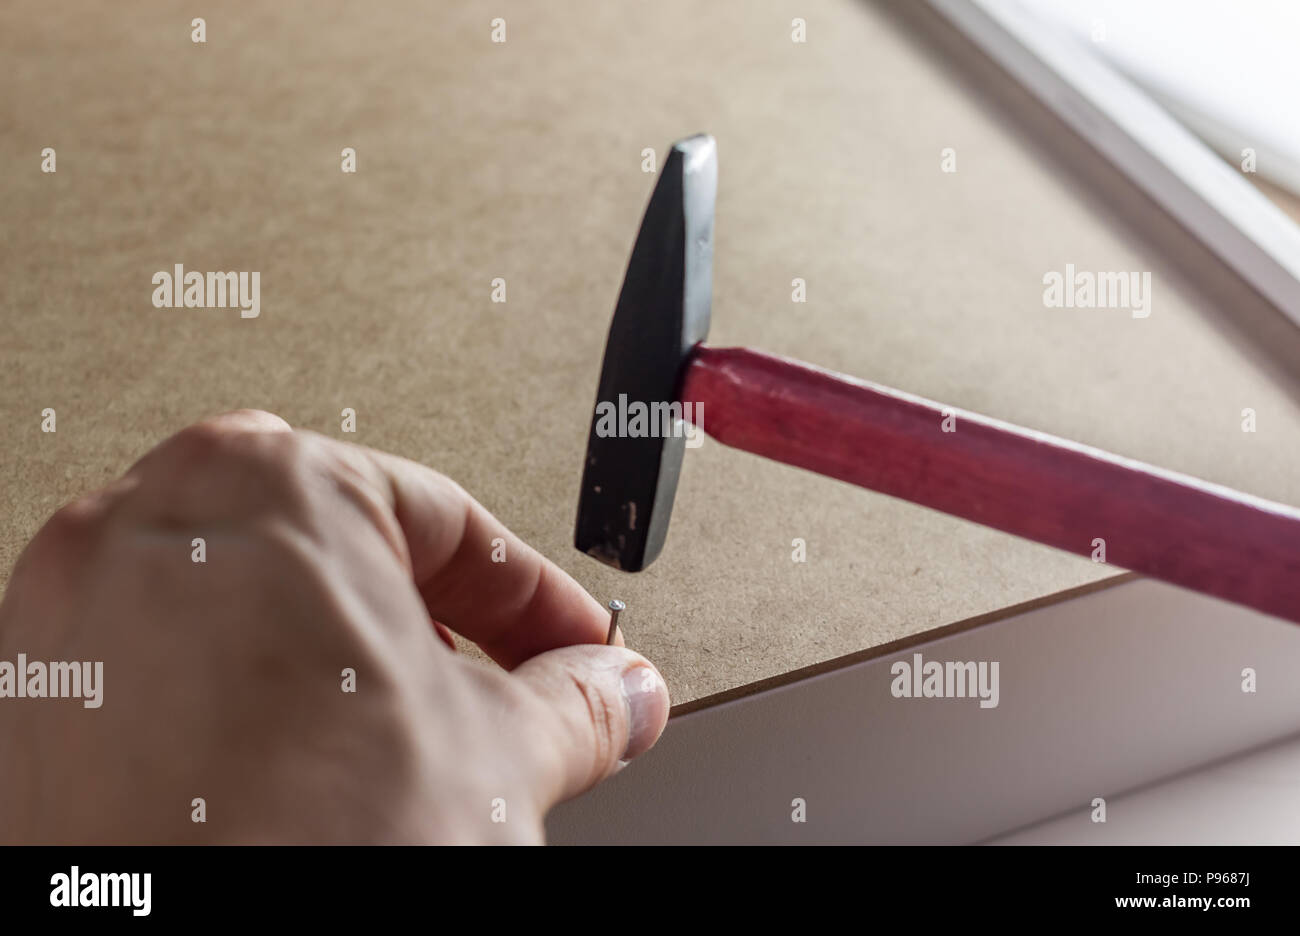 close up hammering a nail Stock Photo